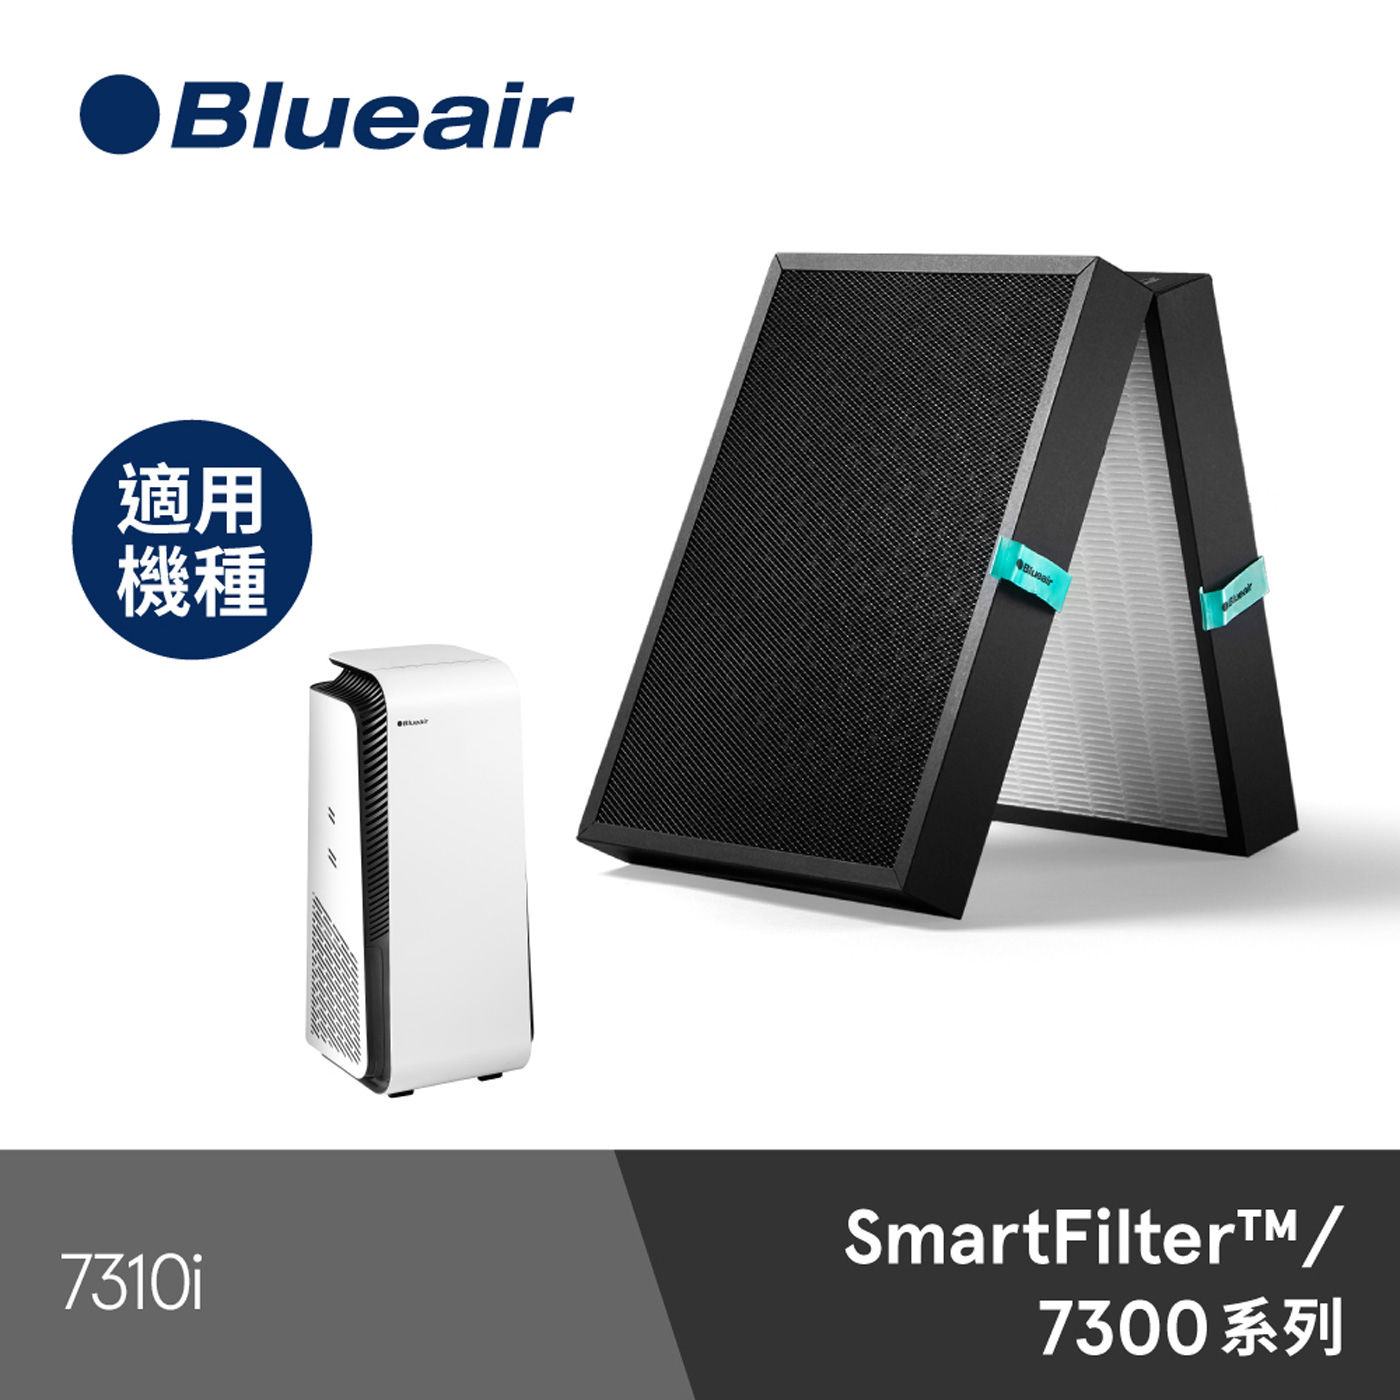 Blueair 7300系列 SmartFilter 智能濾網 適用7310i